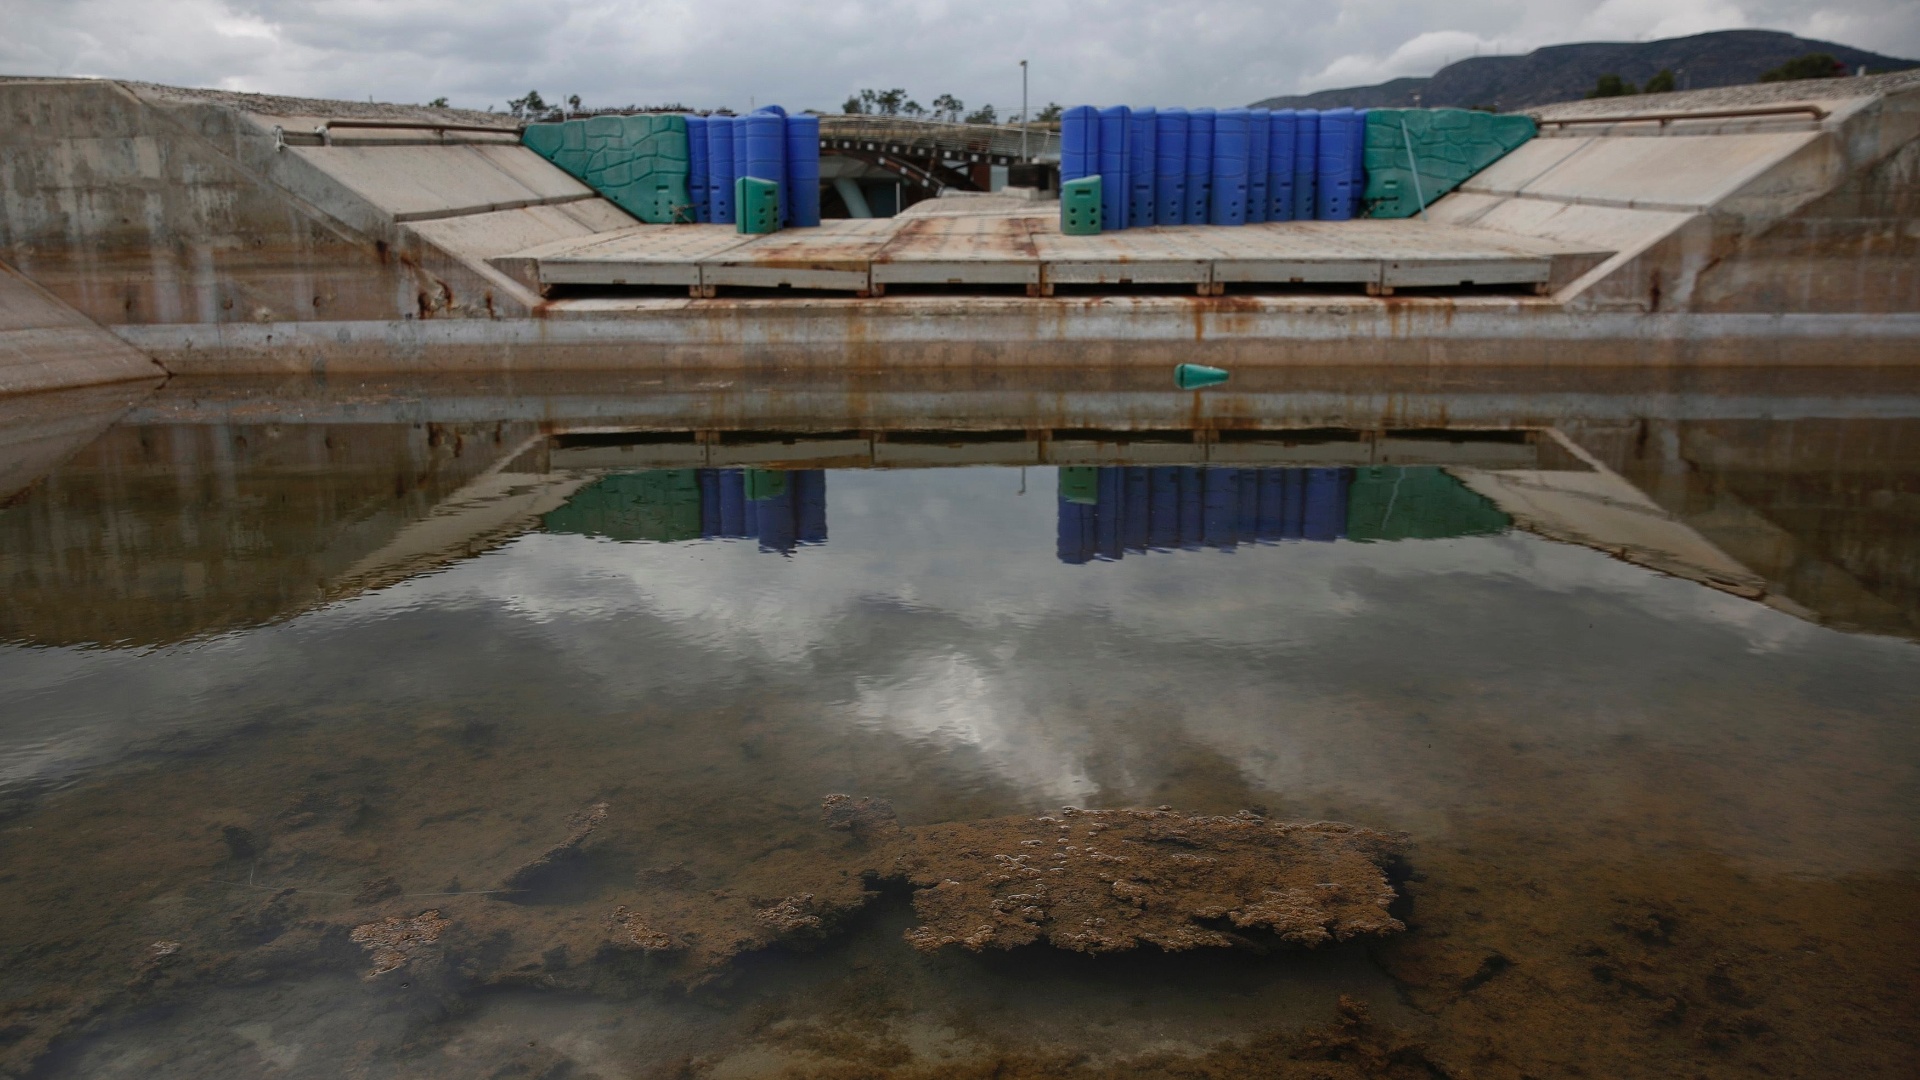 25.jul.2014 - O espaço que abrigou as competições de canoagem nos Jogos Olímpicos de Atenas está sem água e totalmente abandonado 10 anos após a realização do evento